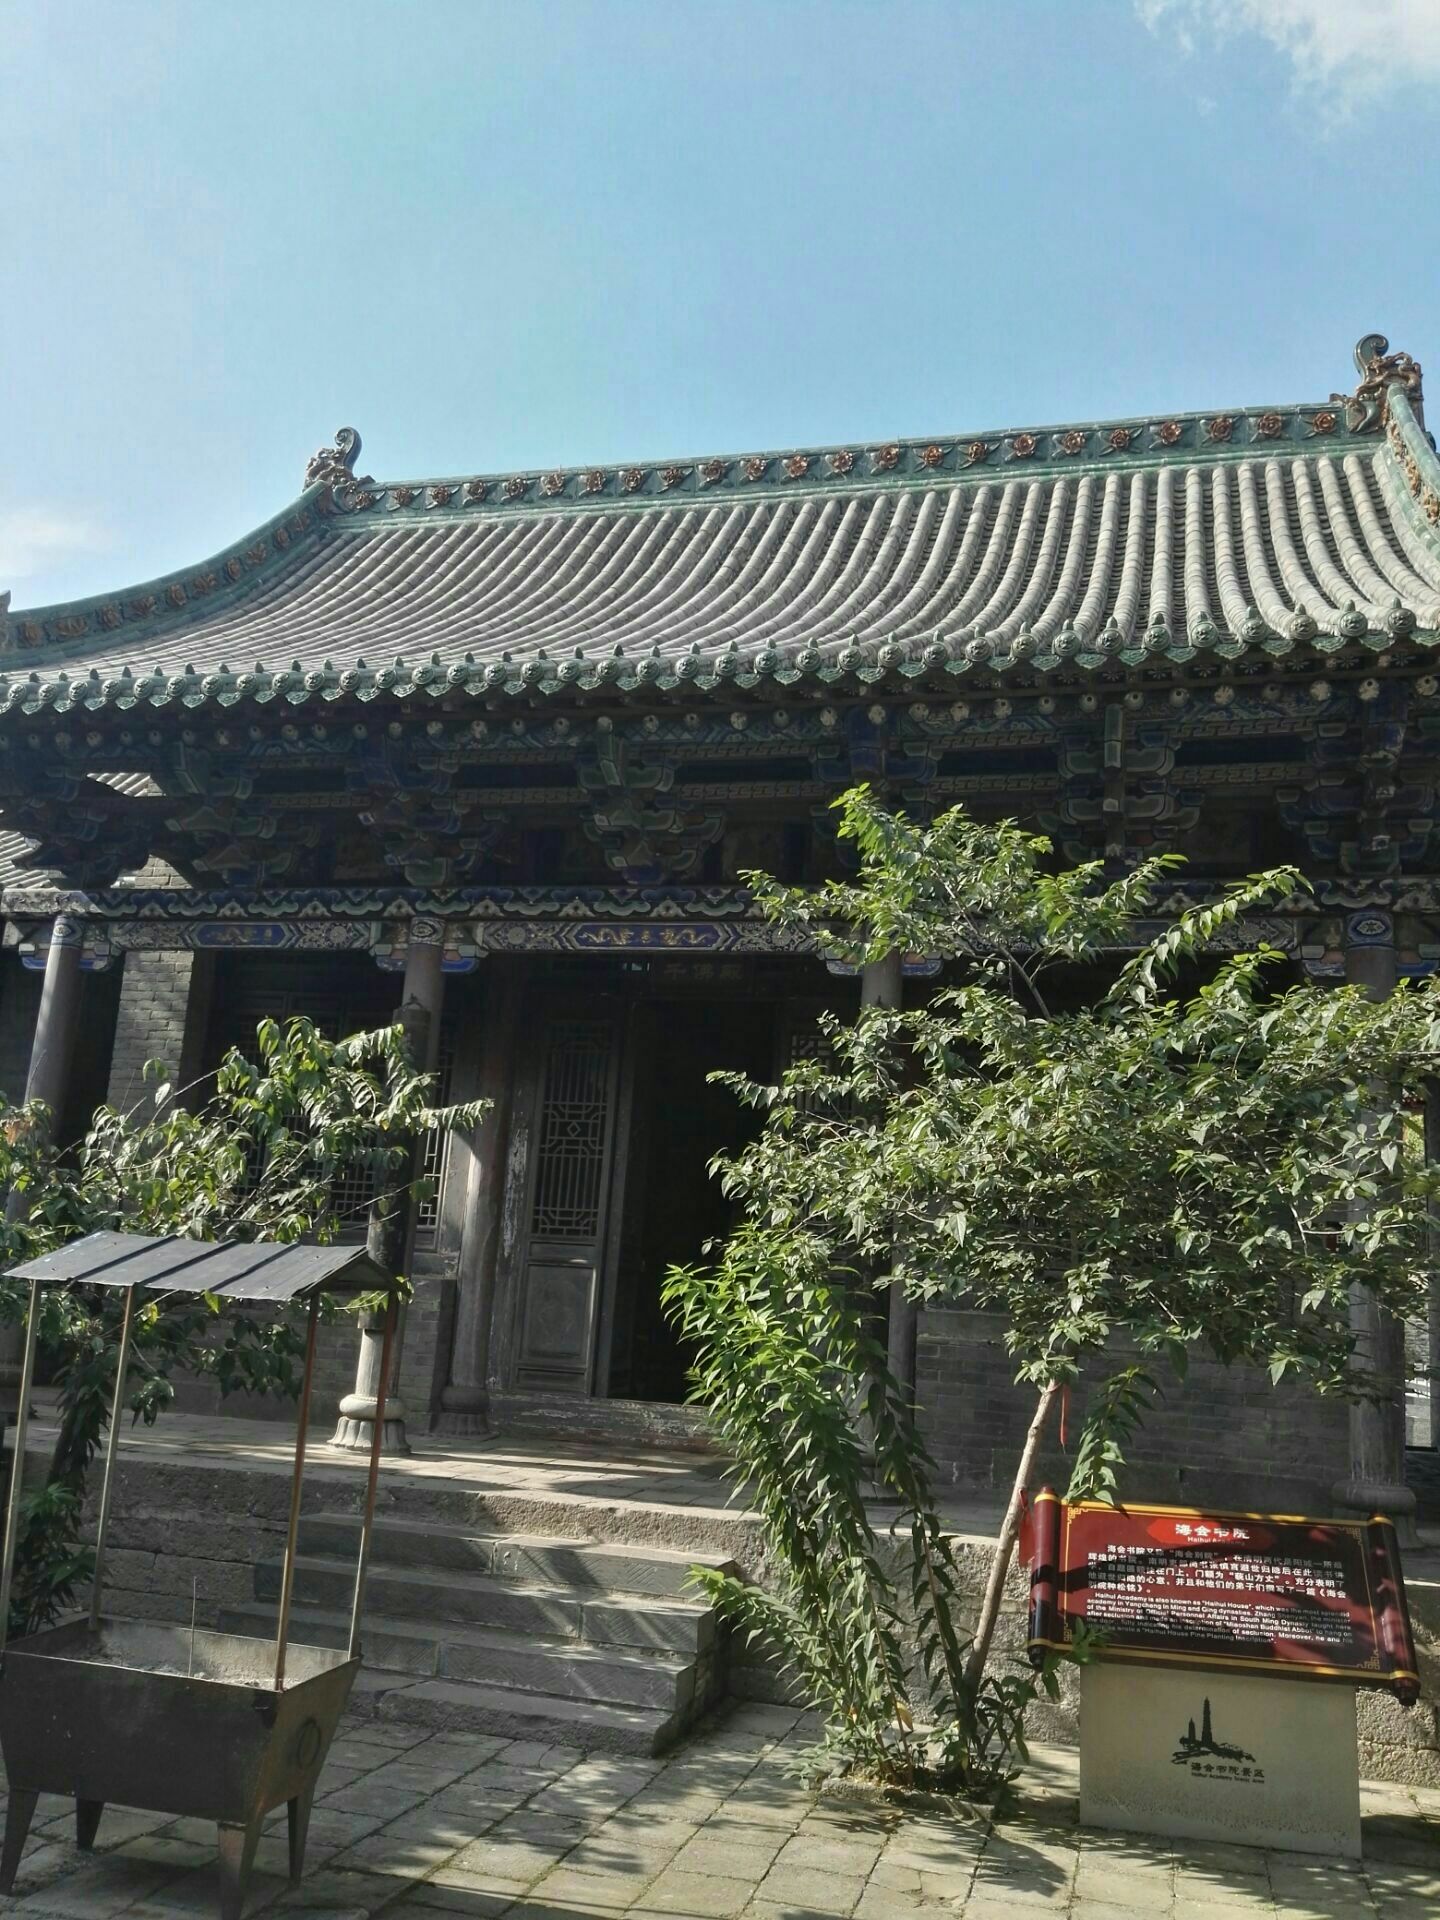 太湖县海会寺图片